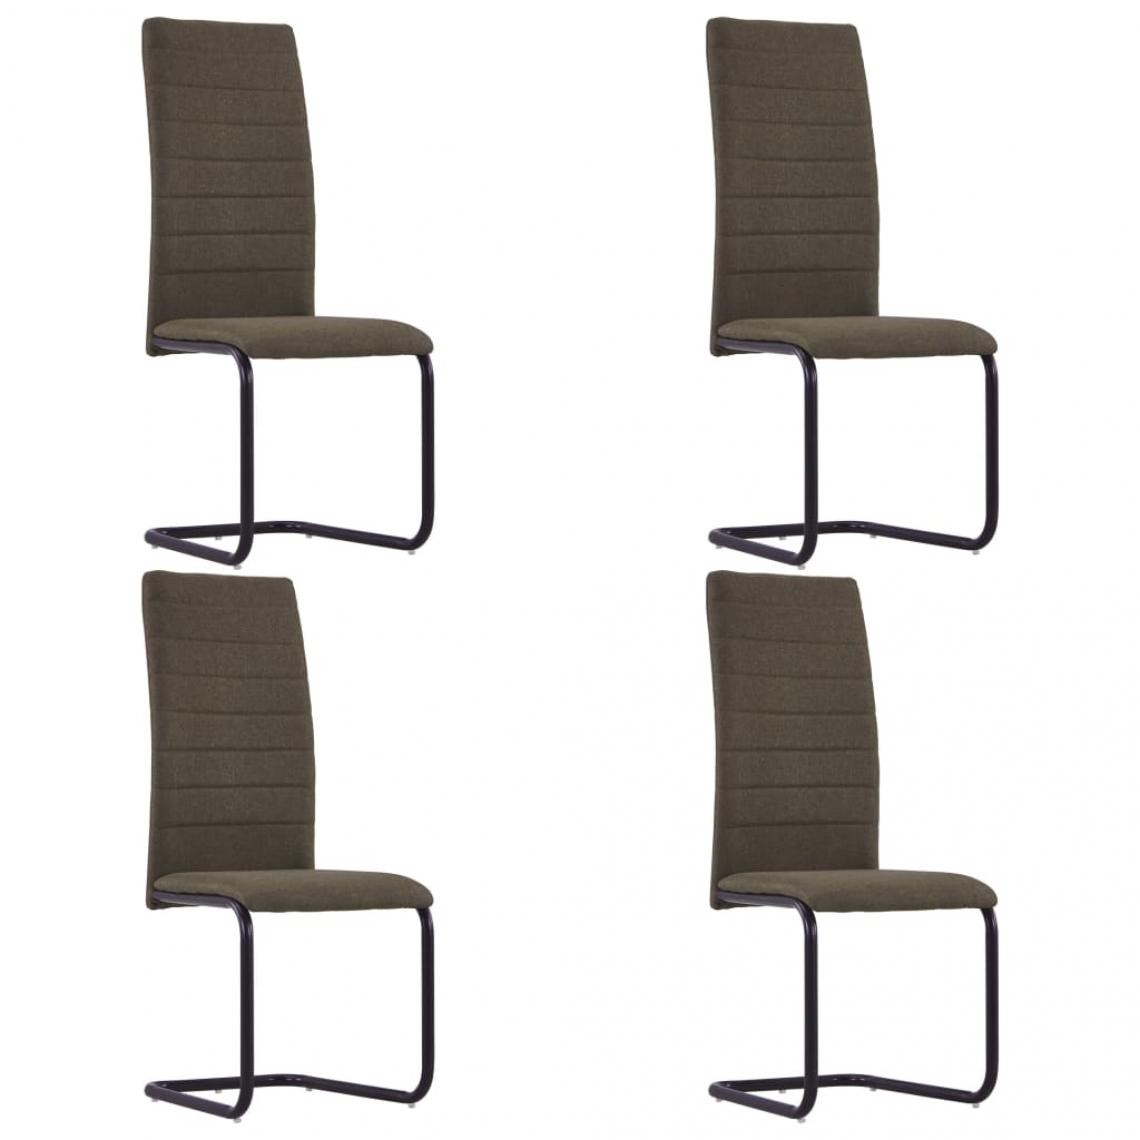 Decoshop26 - Lot de 4 chaises de salle à manger cuisine cantilever design moderne tissu marron CDS021410 - Chaises